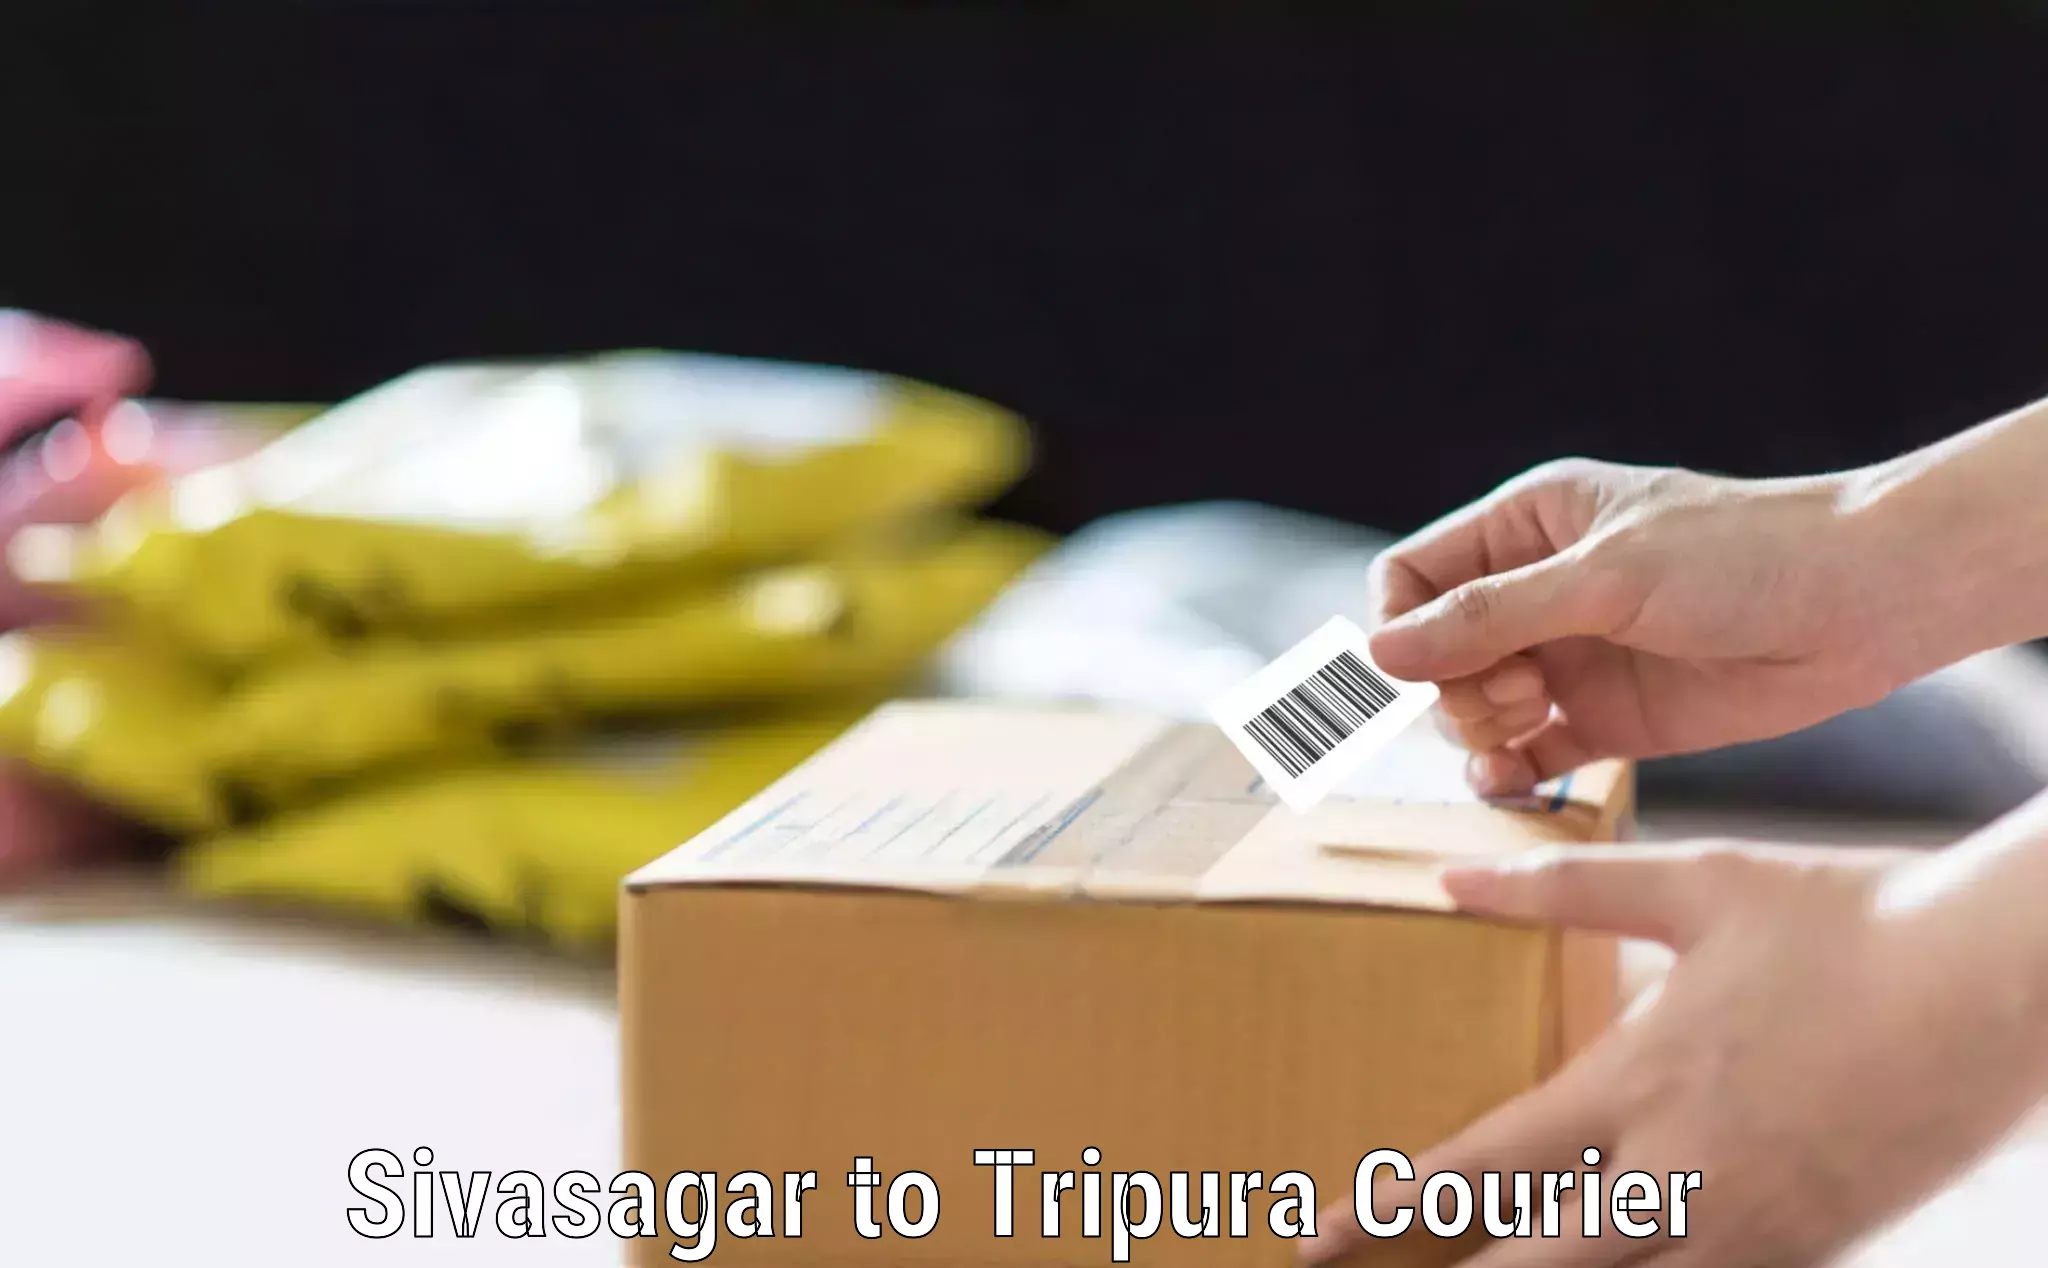 Baggage courier calculator Sivasagar to Agartala